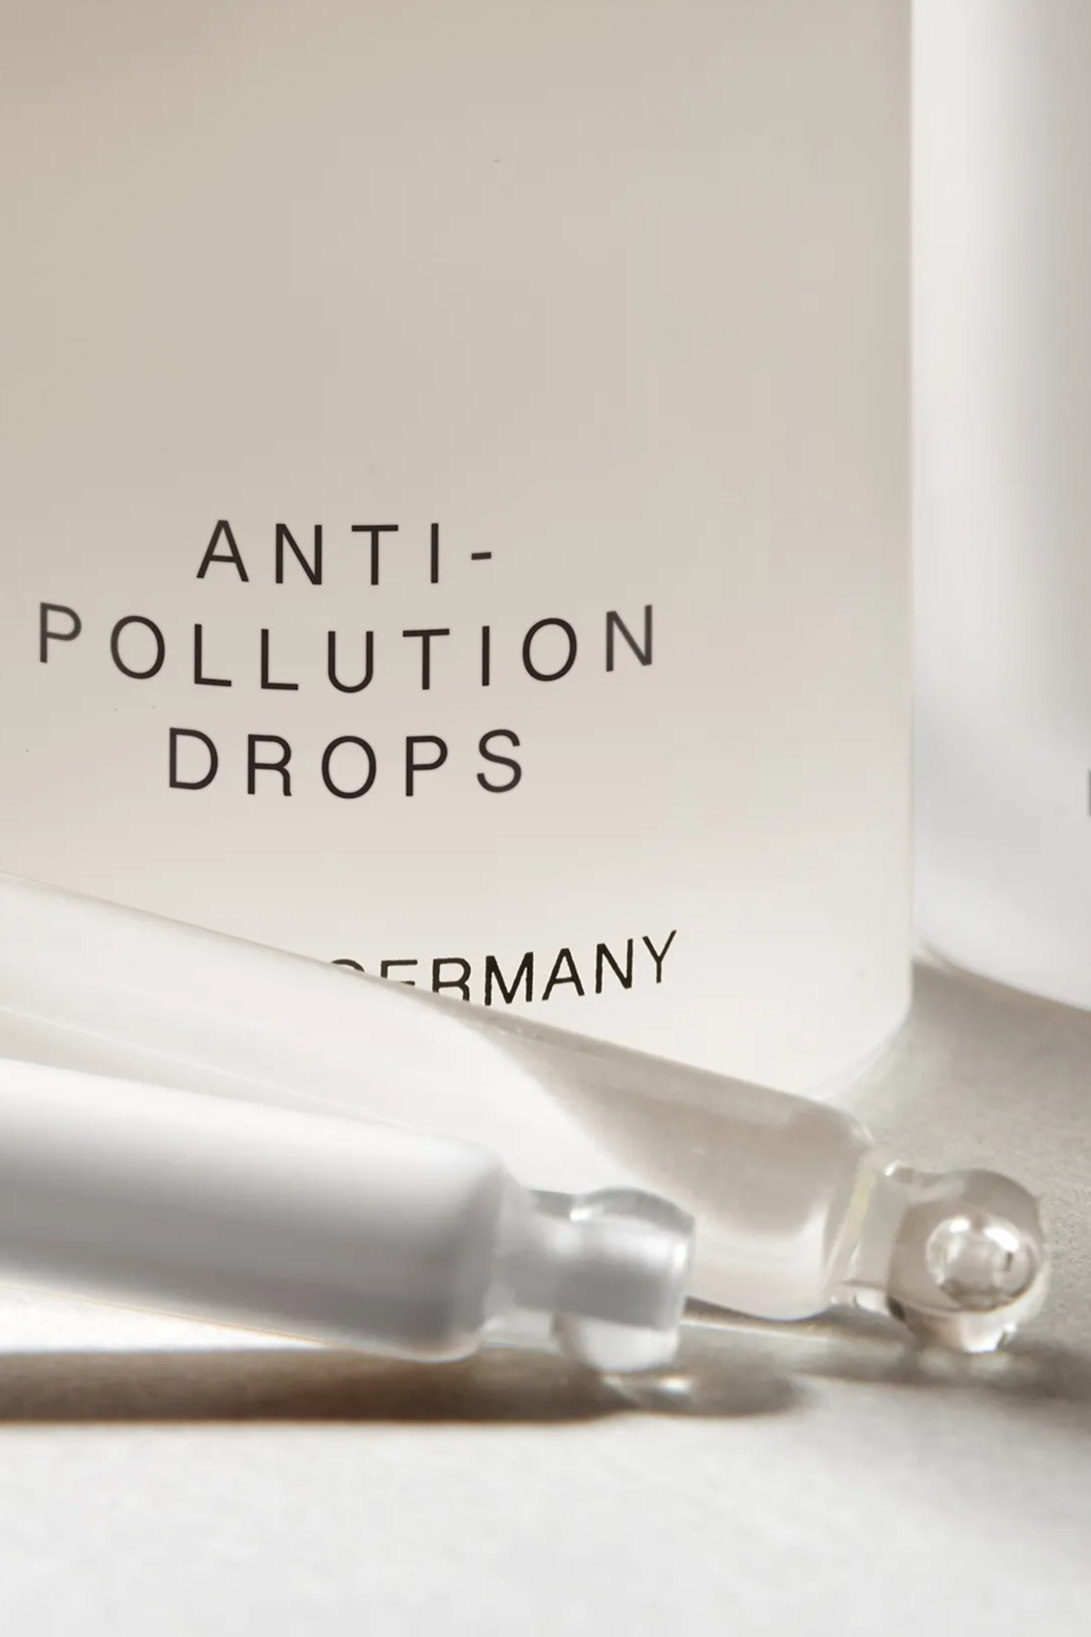 aqnti-pollution drops pipette